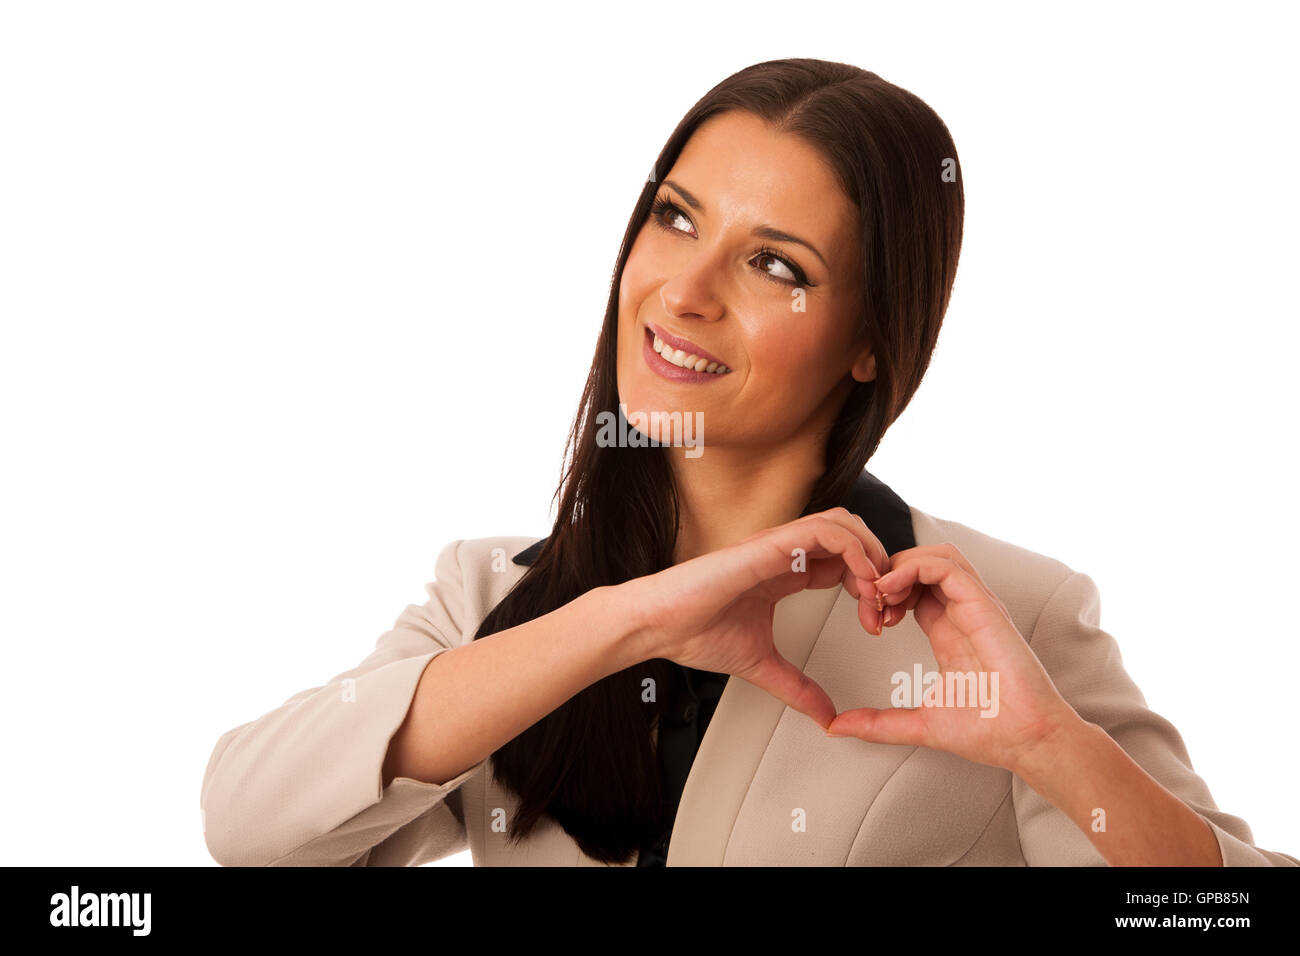 Frau Gestik Liebe und Leidenschaft mit Händen in Herzform. Körpersprache von positiven Emotionen. Stockfoto